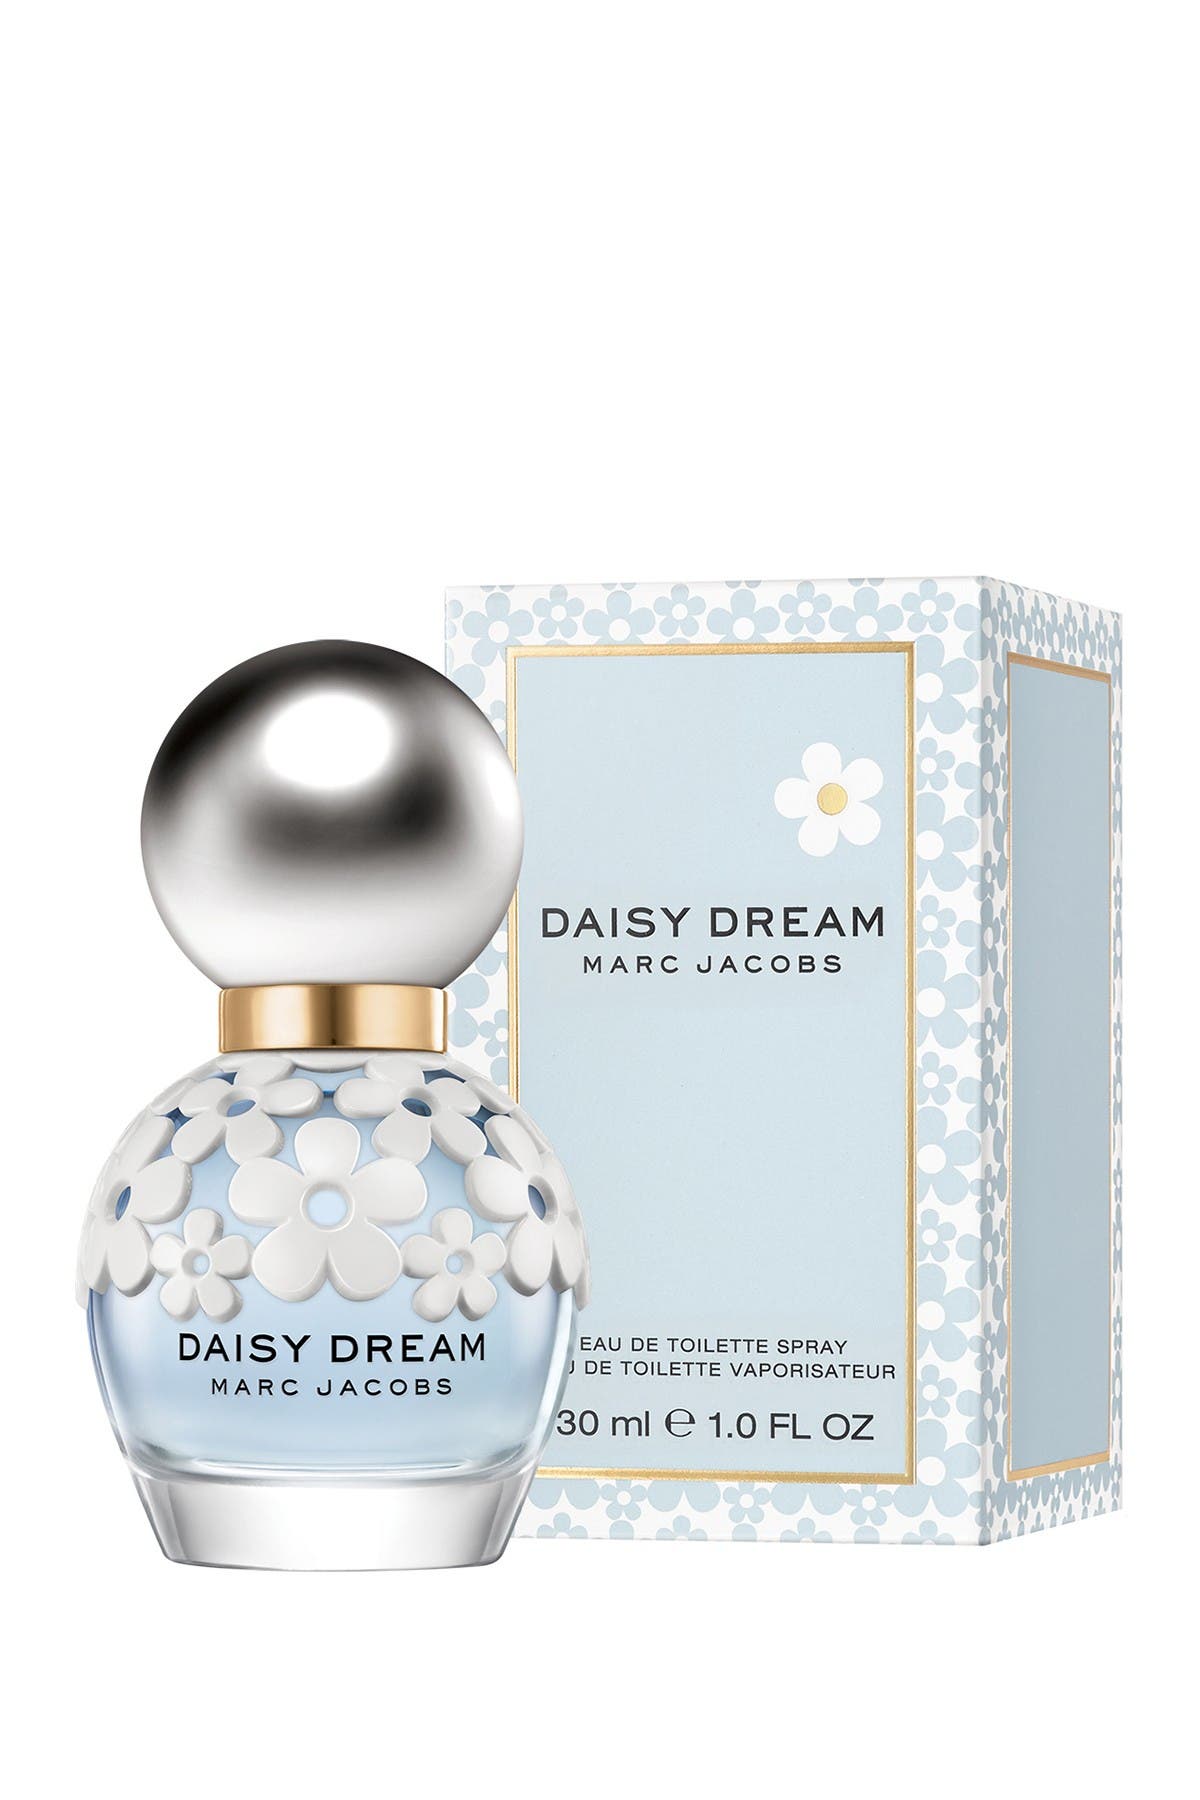 marc jacobs daisy dream perfume